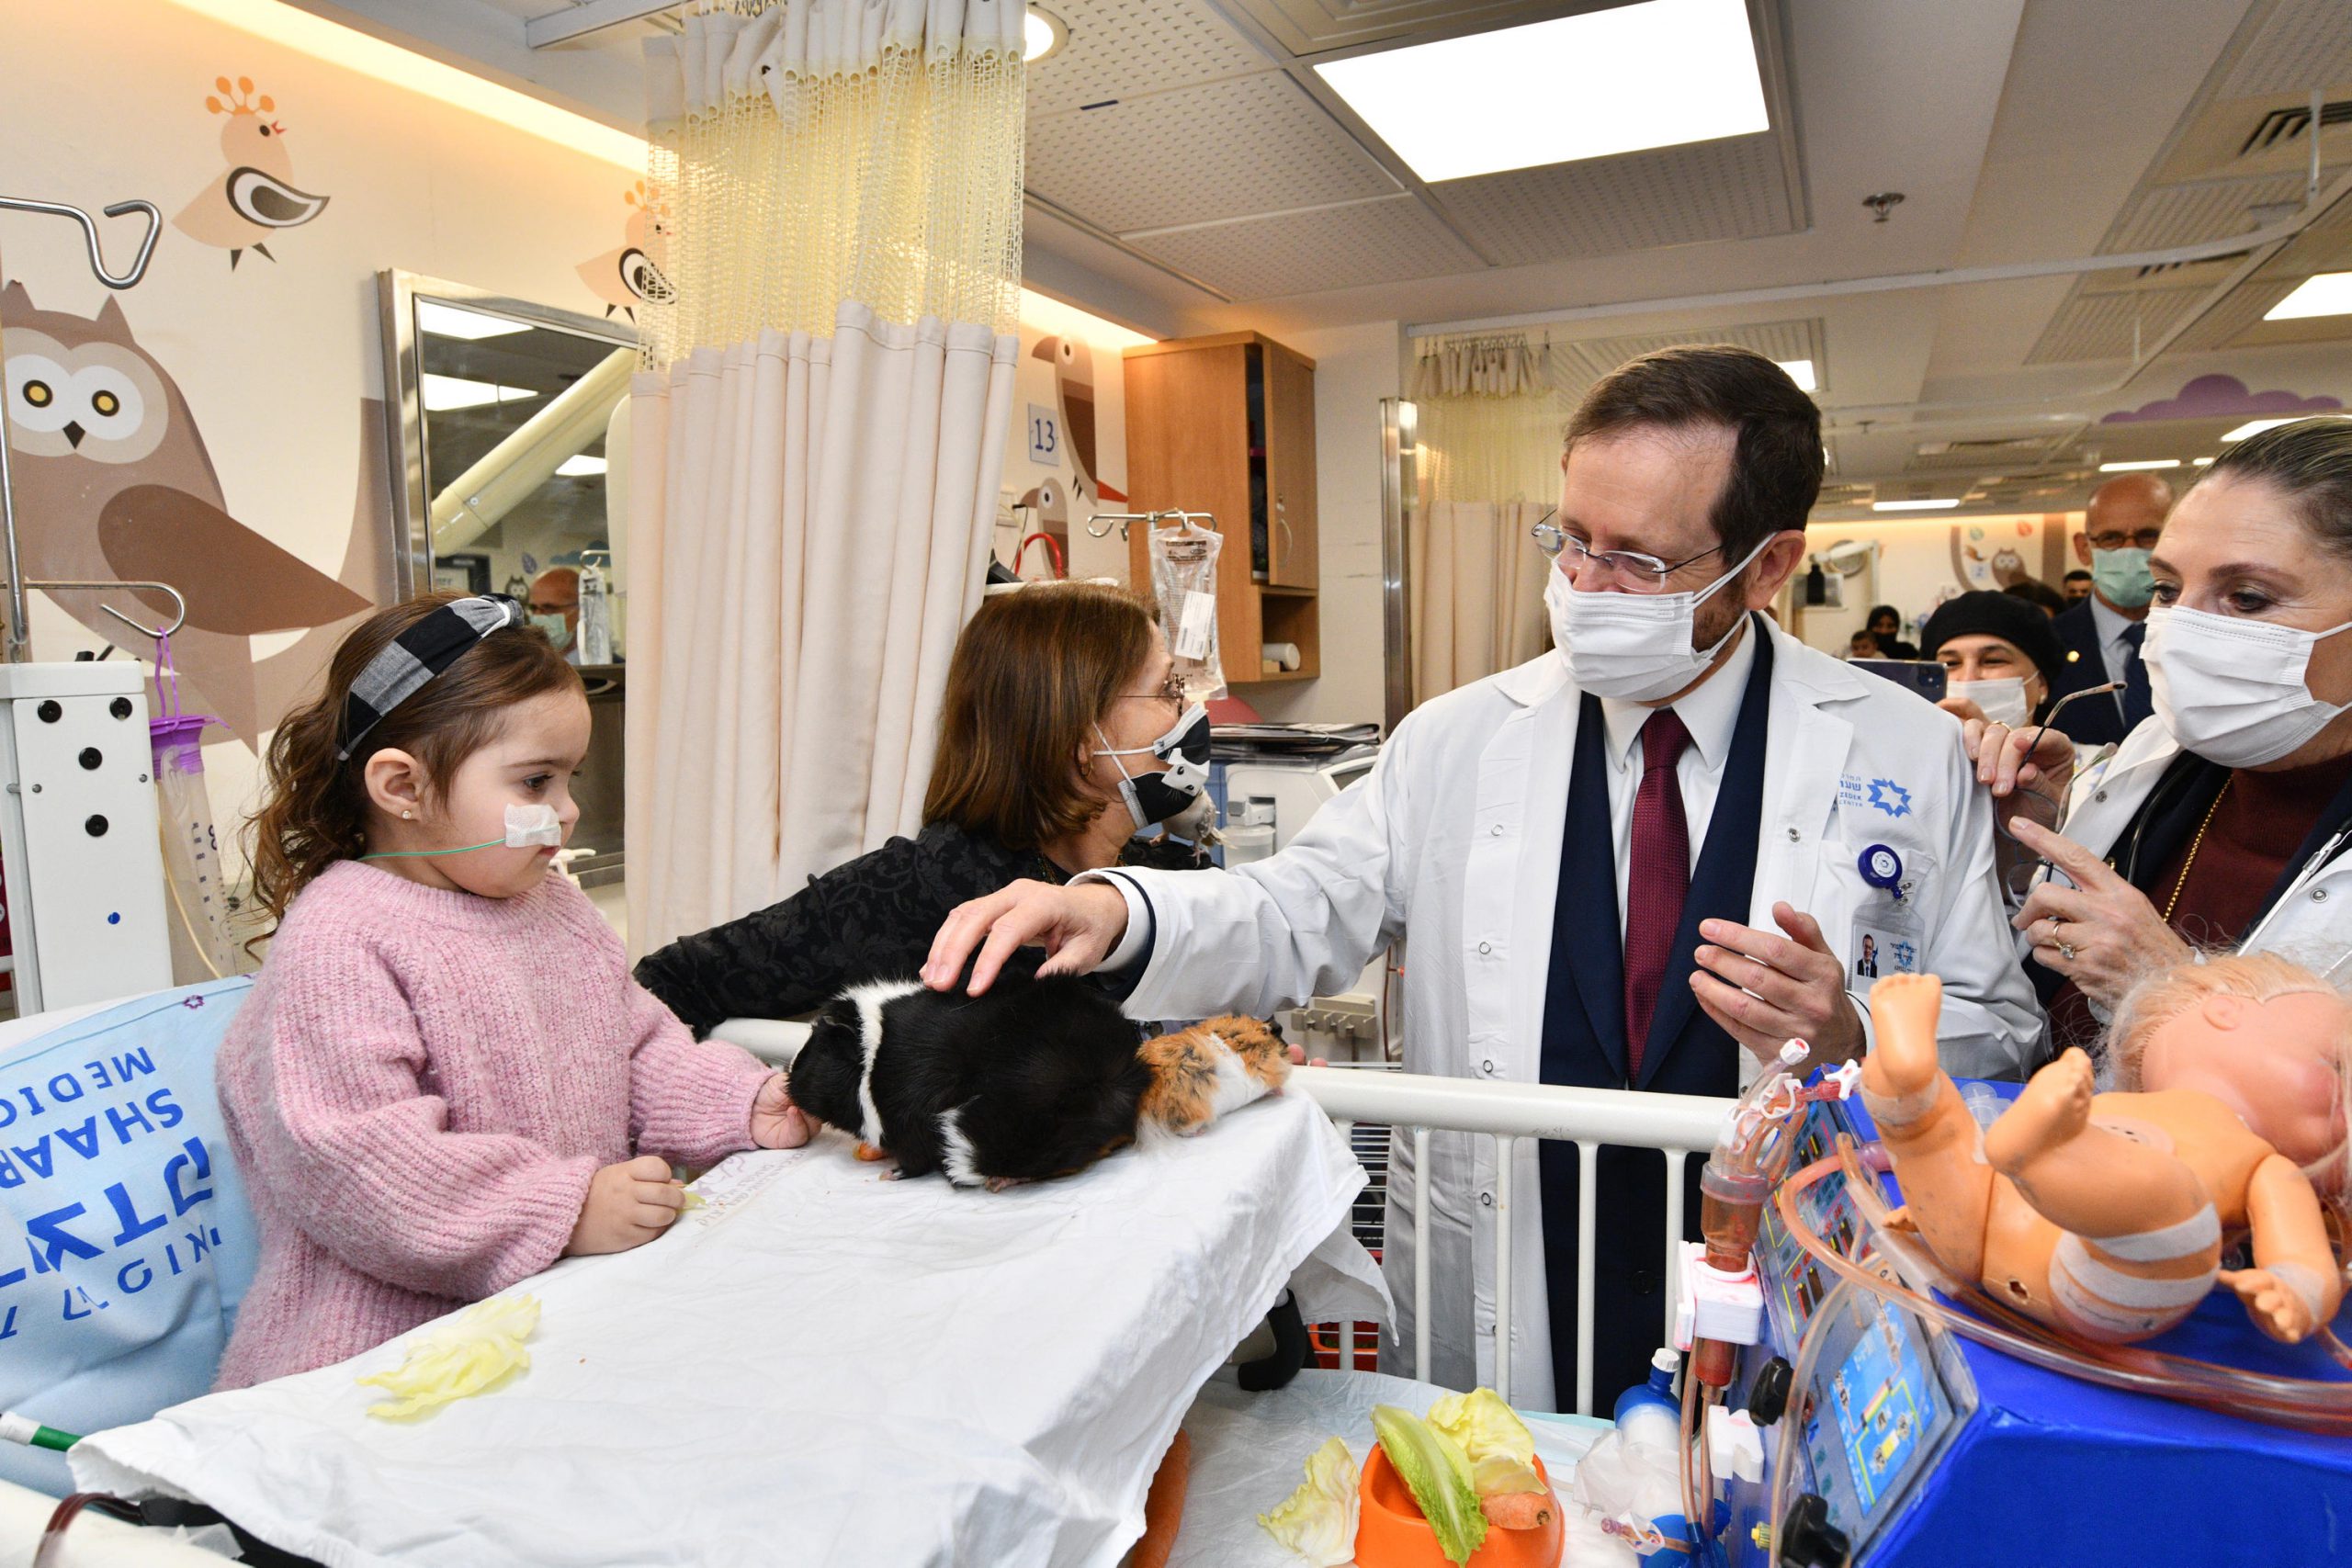 לרגל חג הפורים נשיא המדינה ורעייתו חילקו משלוחי מנות לילדים המאושפזים בבית החולים שערי צדק